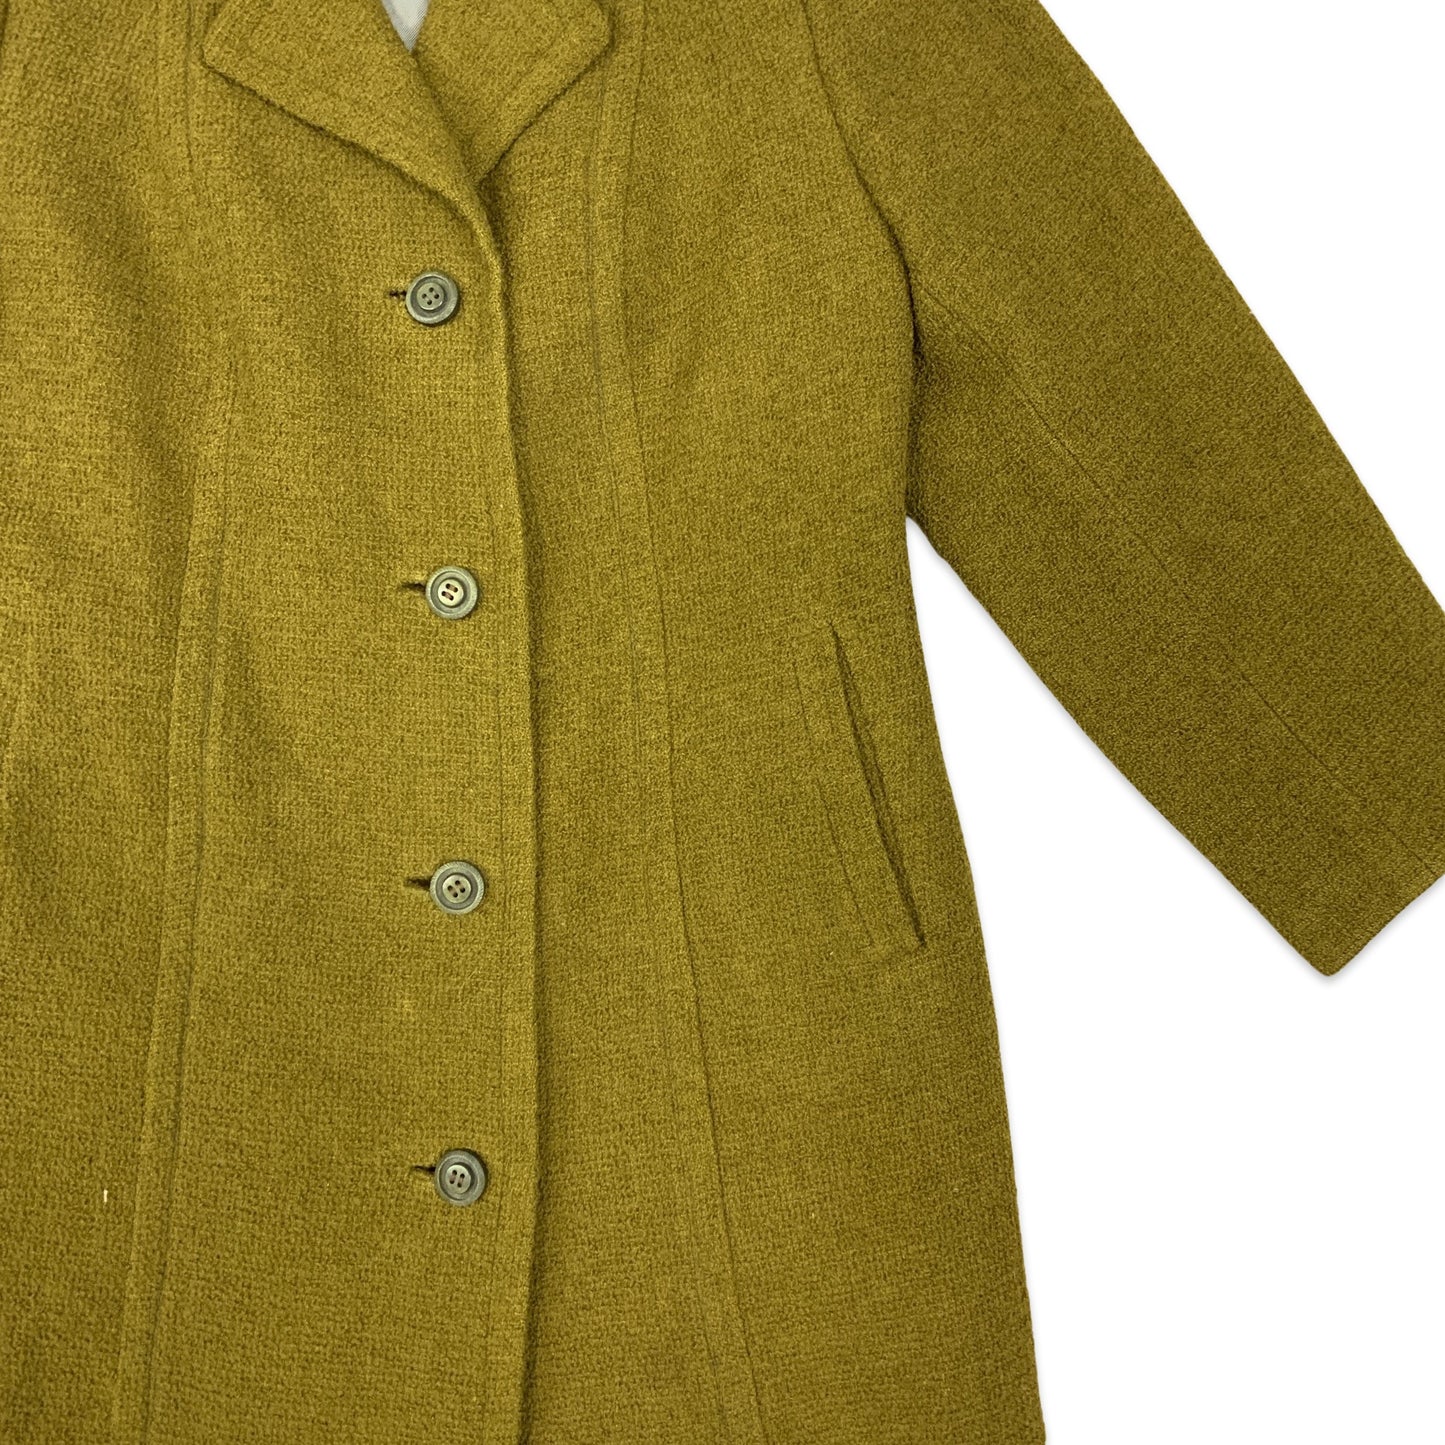 Vintage Ladies Coat Brown 8 10